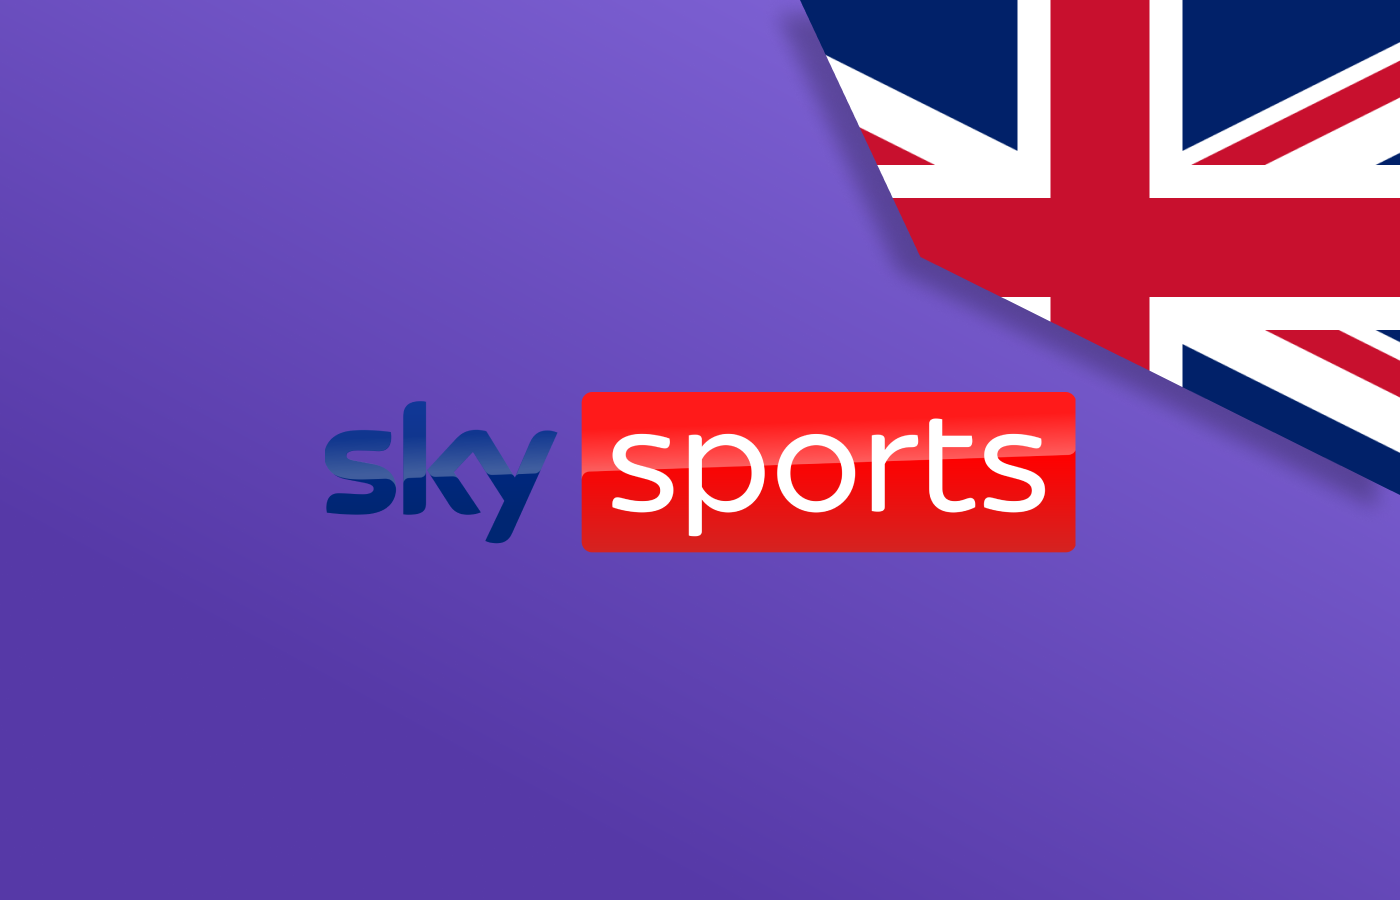 Watch Sky Sports Outside UK